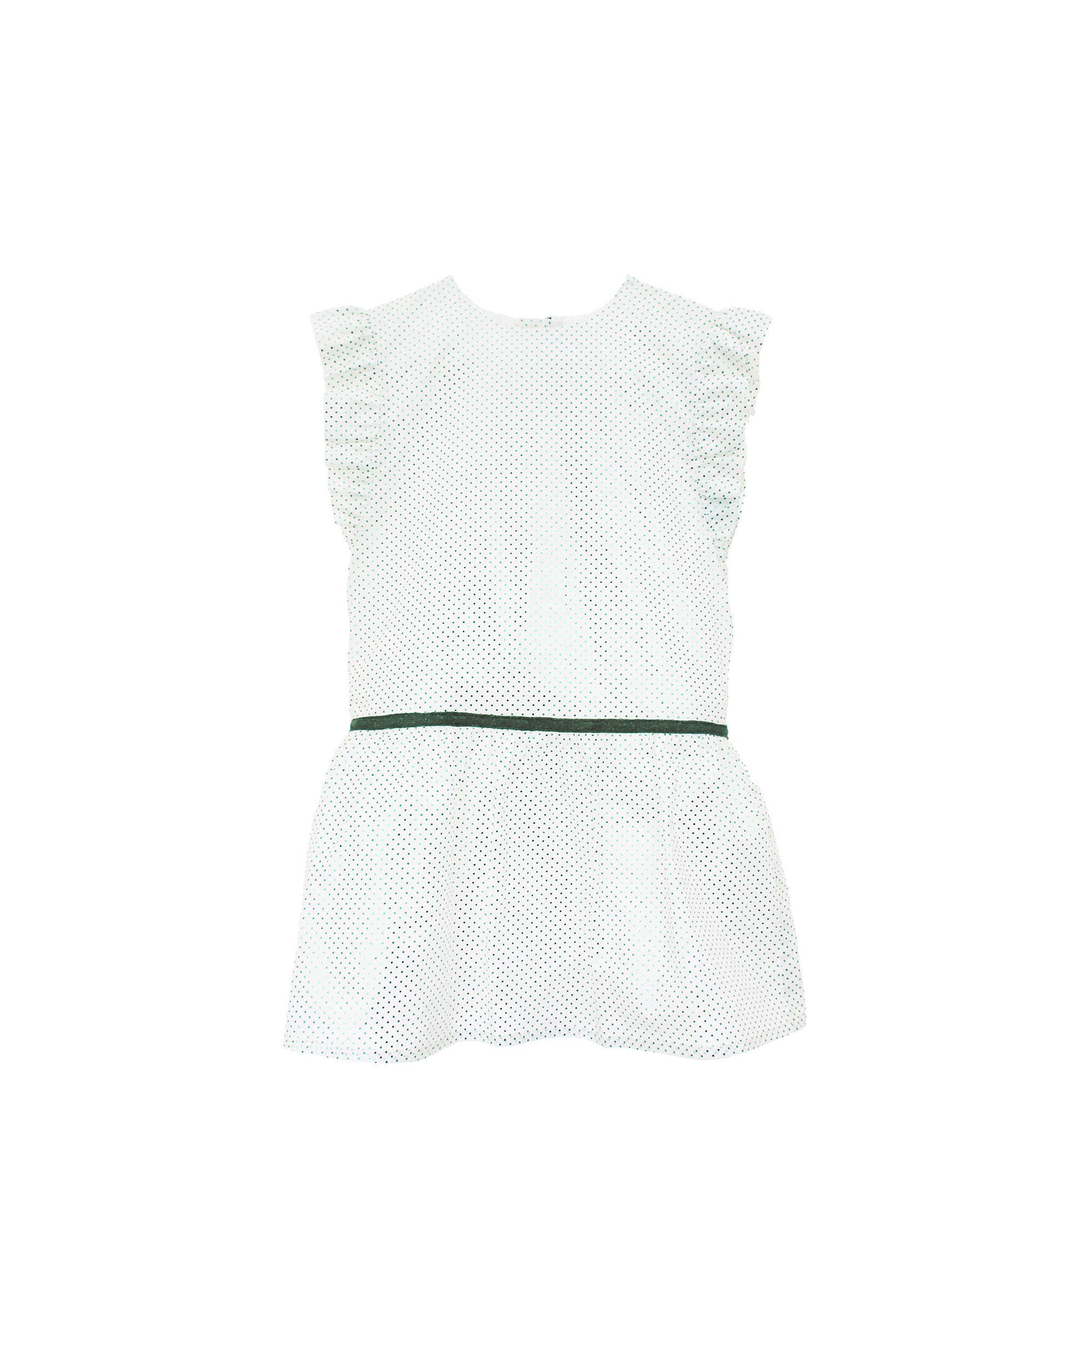 Vestido blanco con puntos verdes tornasol y cinta cintura verde terciopelo